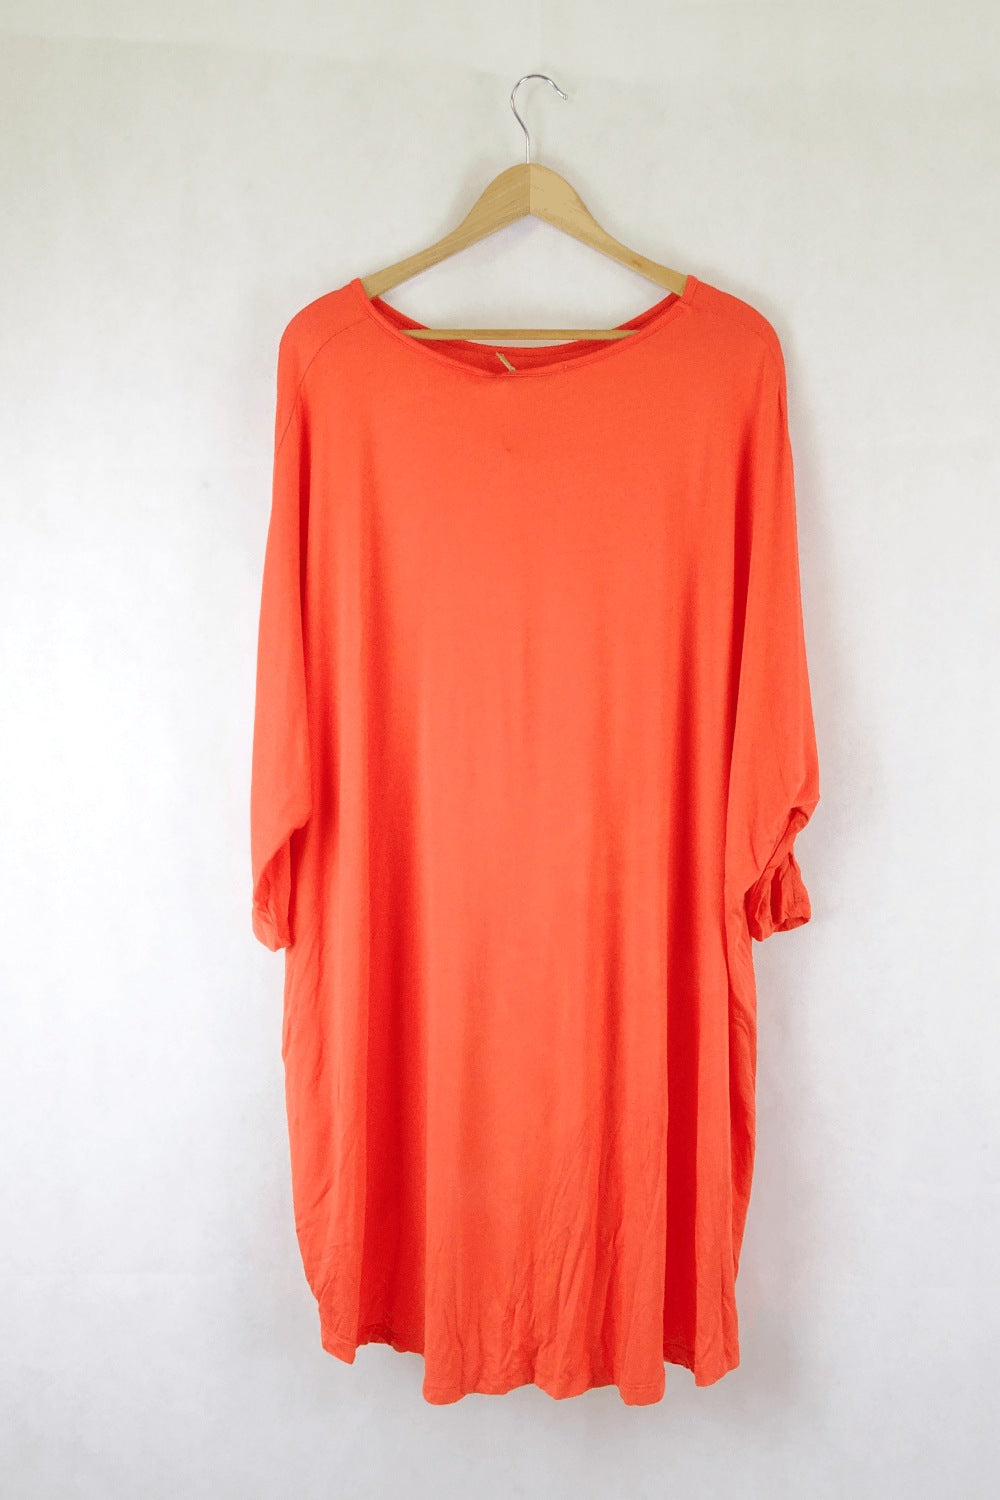 lululemon Orange Top 6 - Reluv Clothing Australia